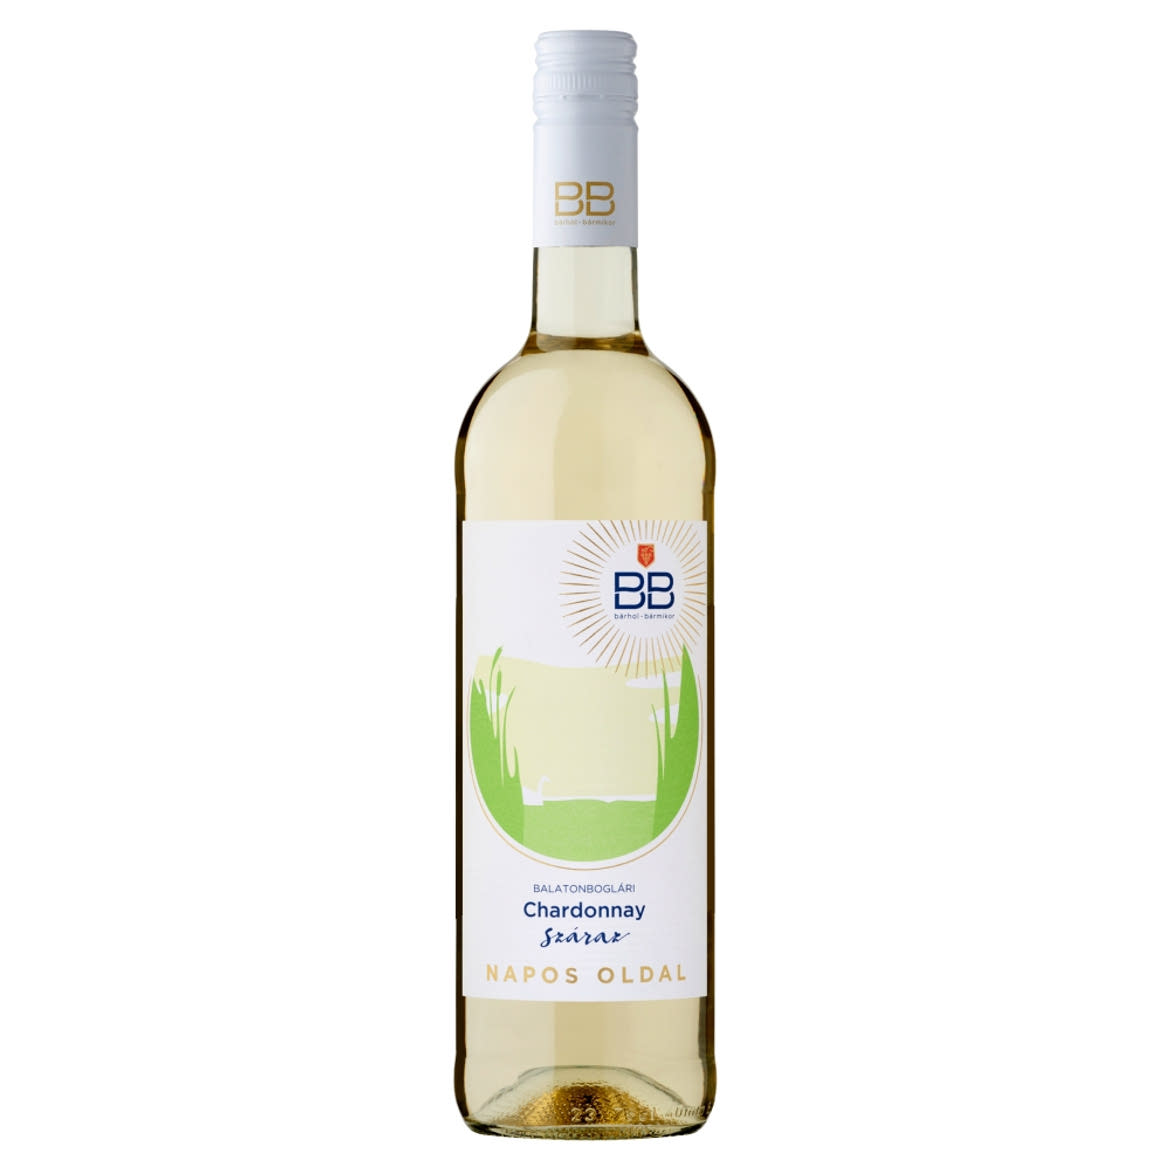 BB Napos Oldal Balatonboglári Chardonnay száraz fehérbor